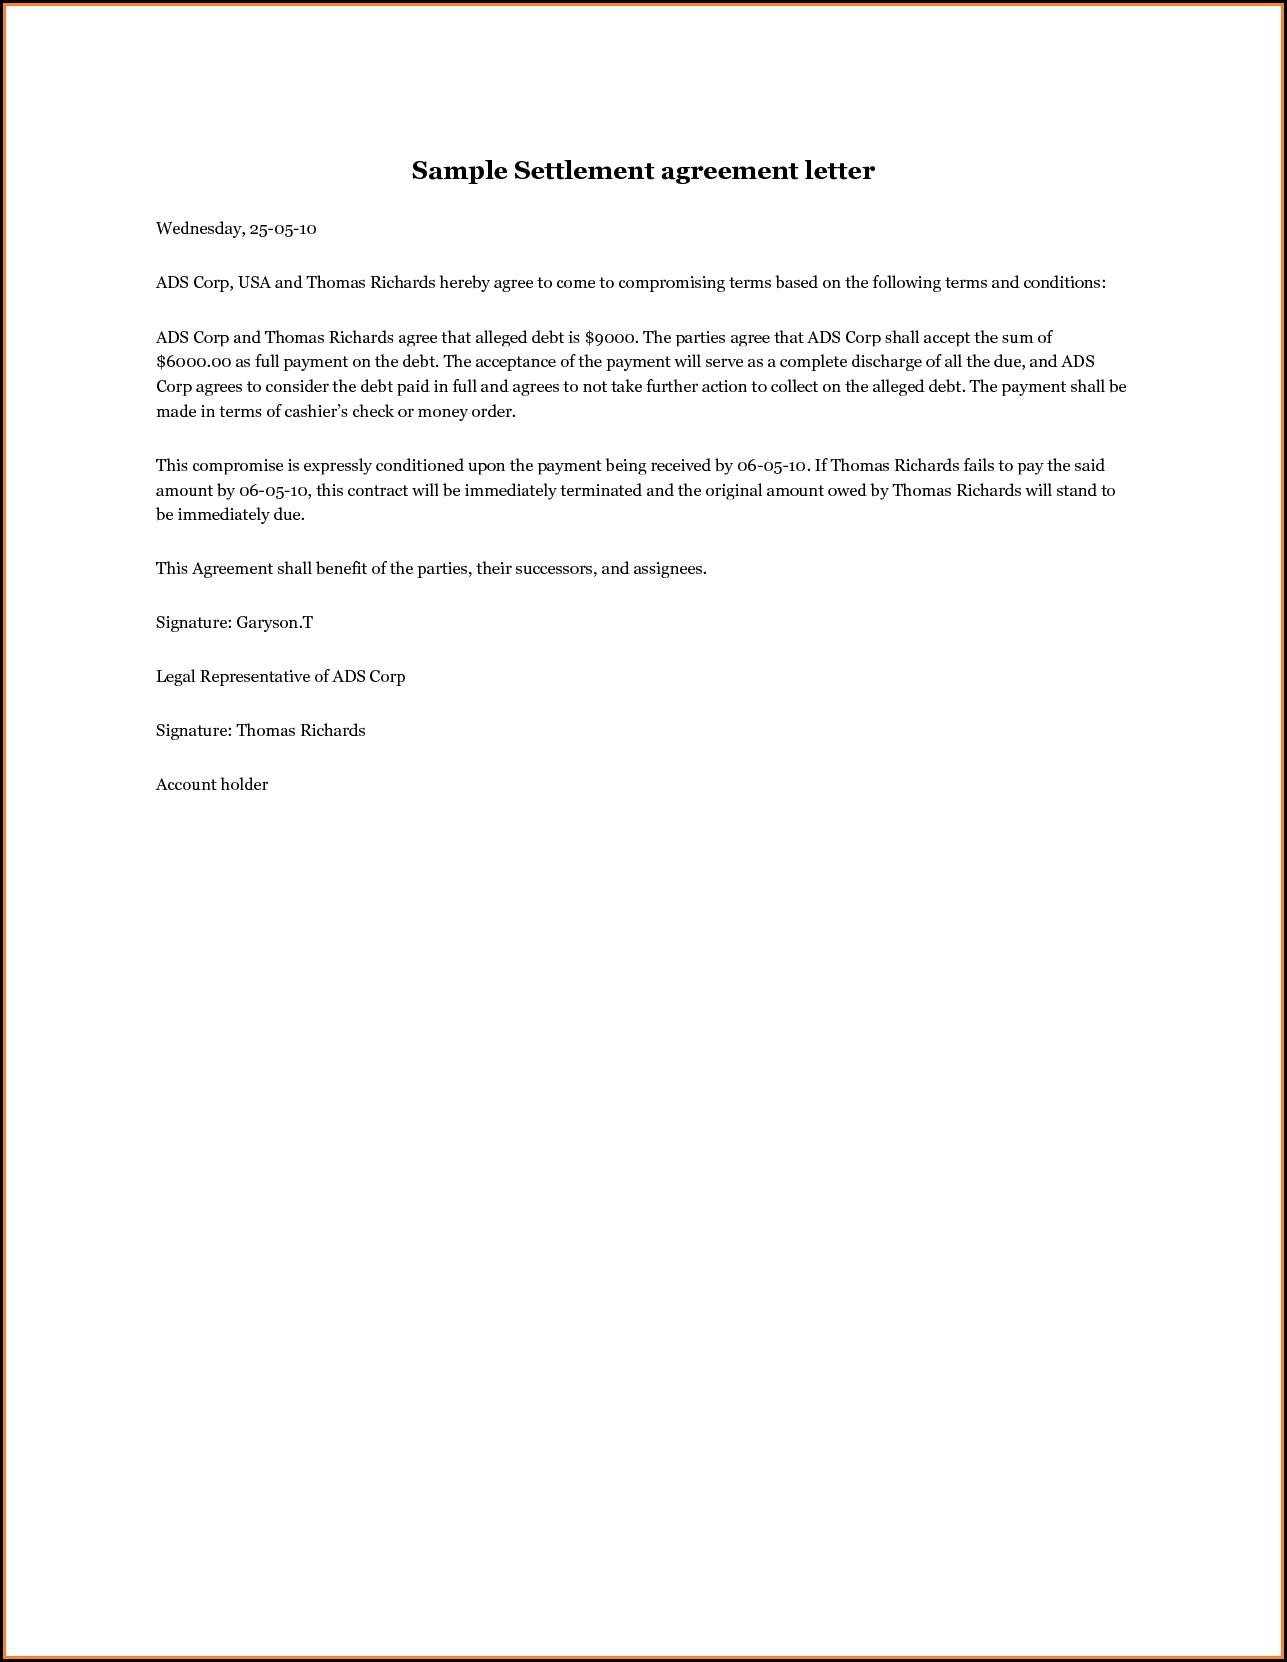 Settlement Agreement Cover Letter Template